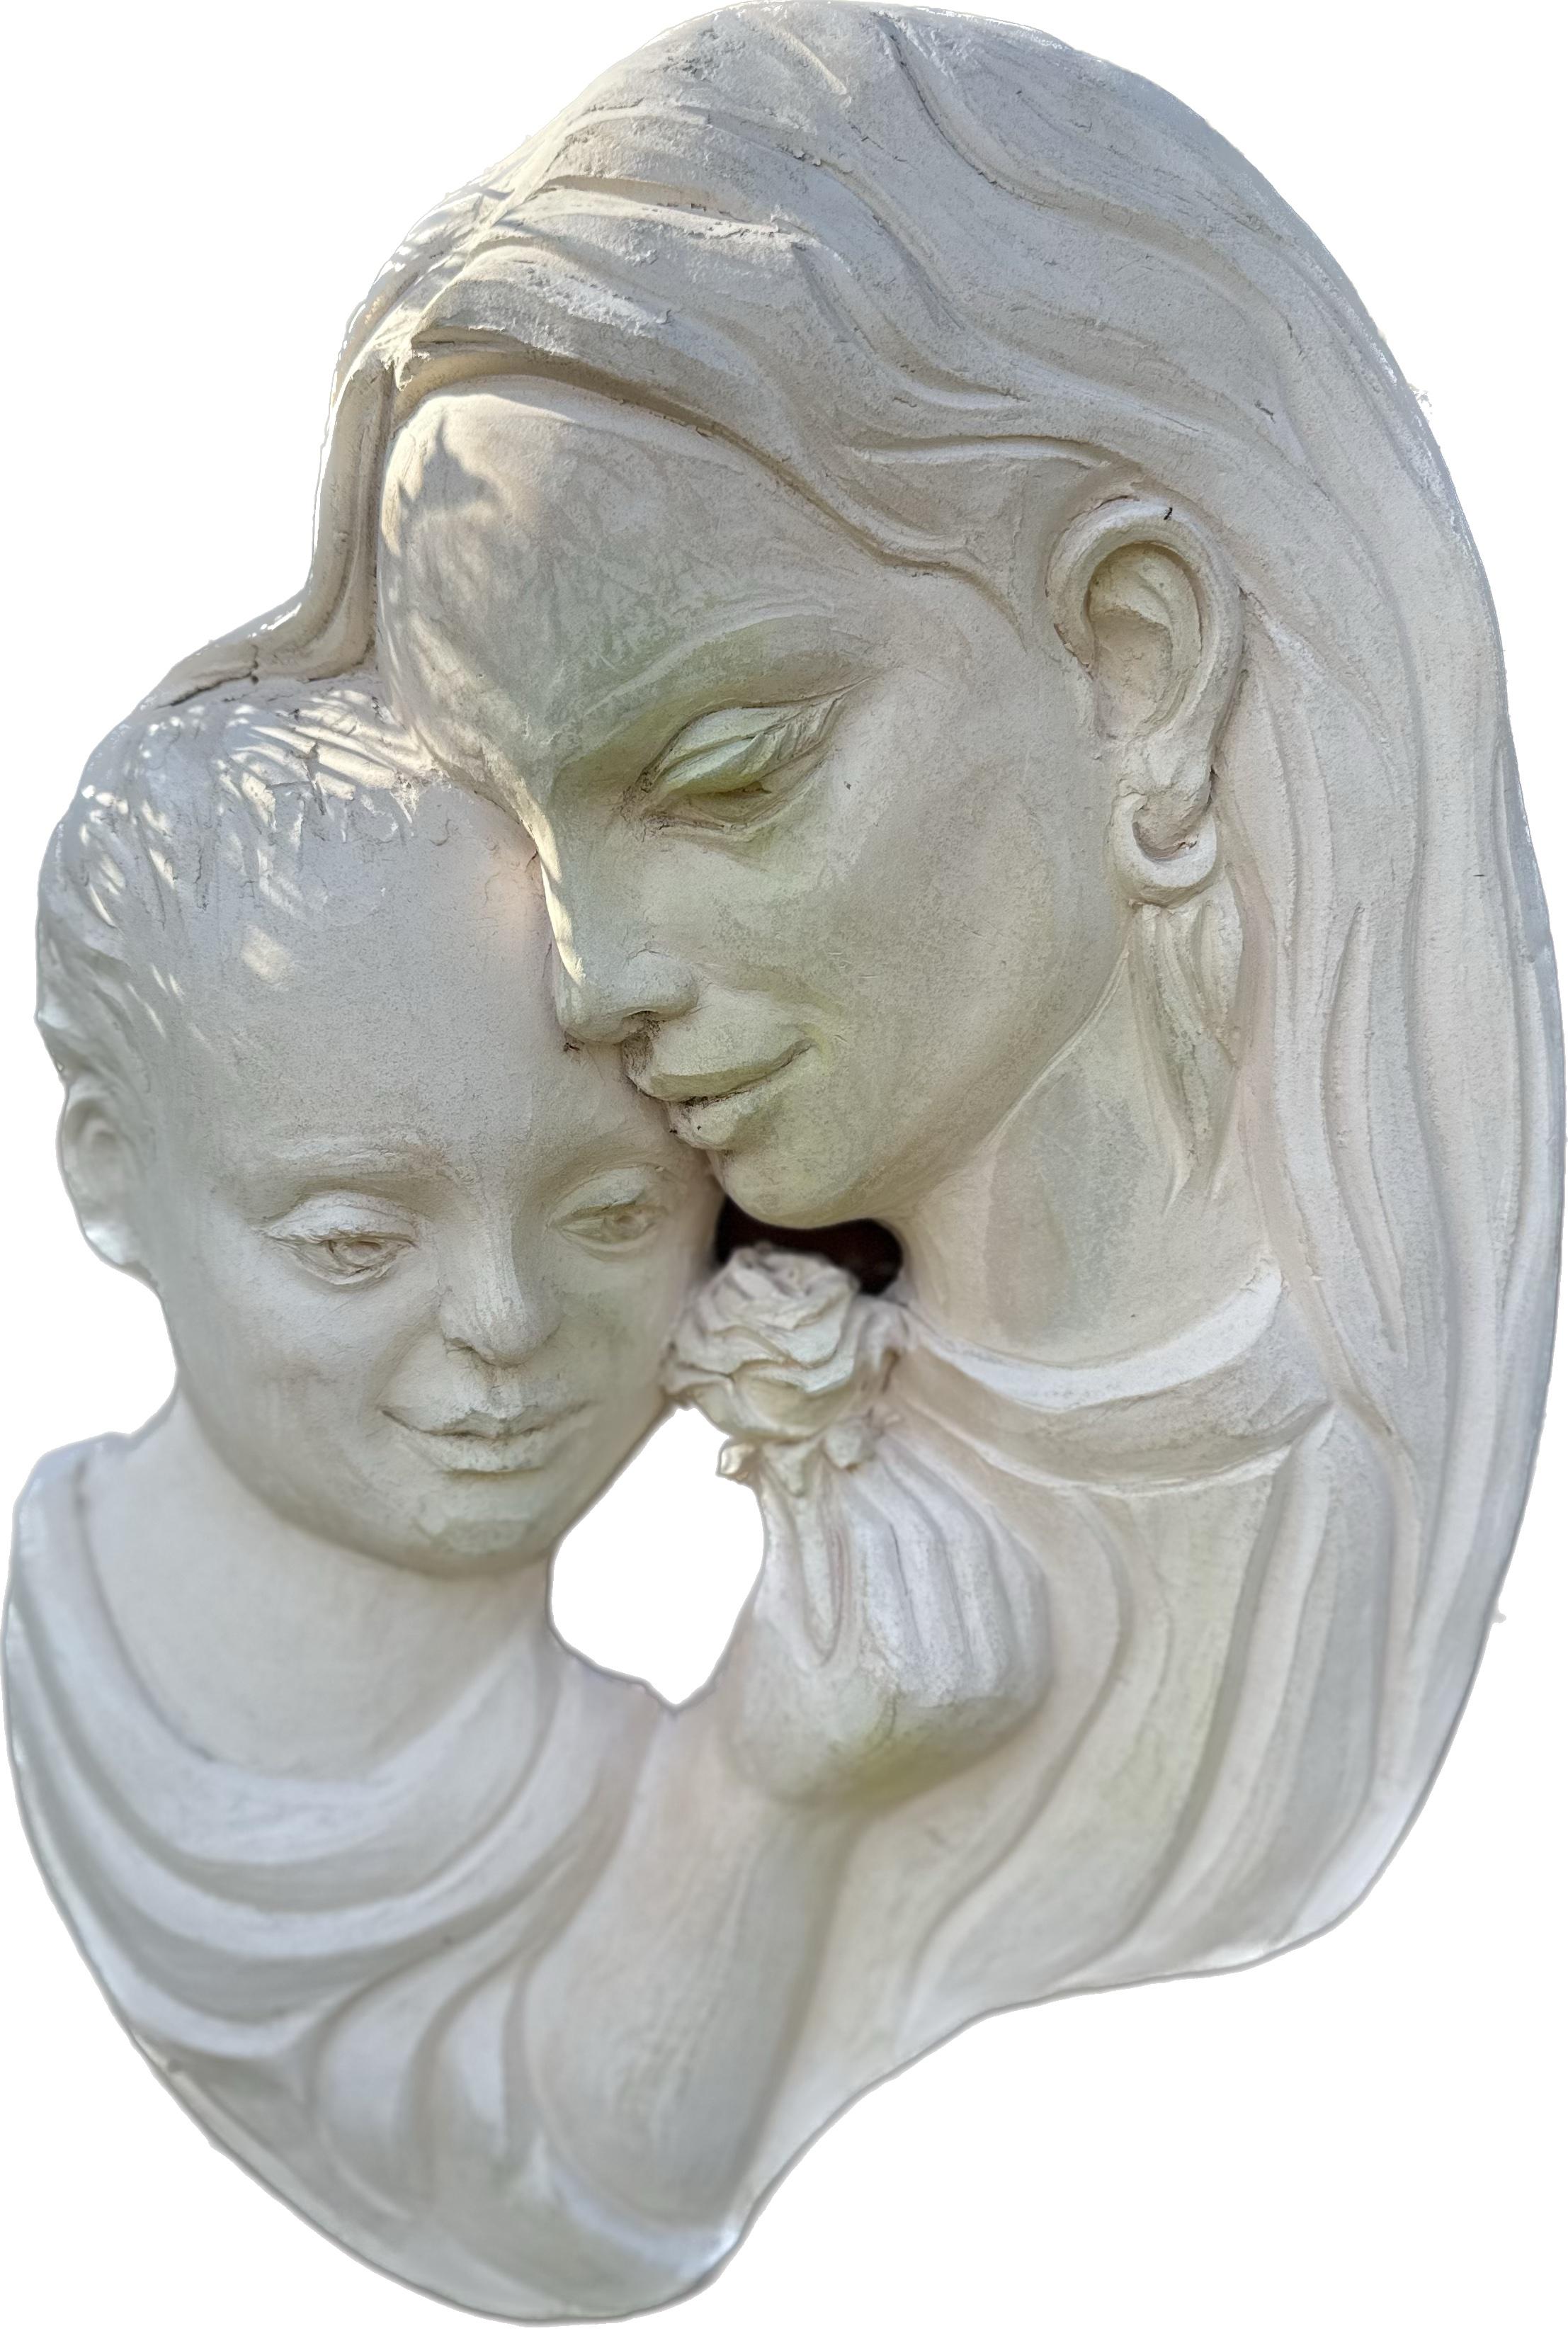 Karapet Balakeseryan  (Garo) Figurative Sculpture – Skulptur der Mutterschaft, Keramik, handgefertigt von Garo